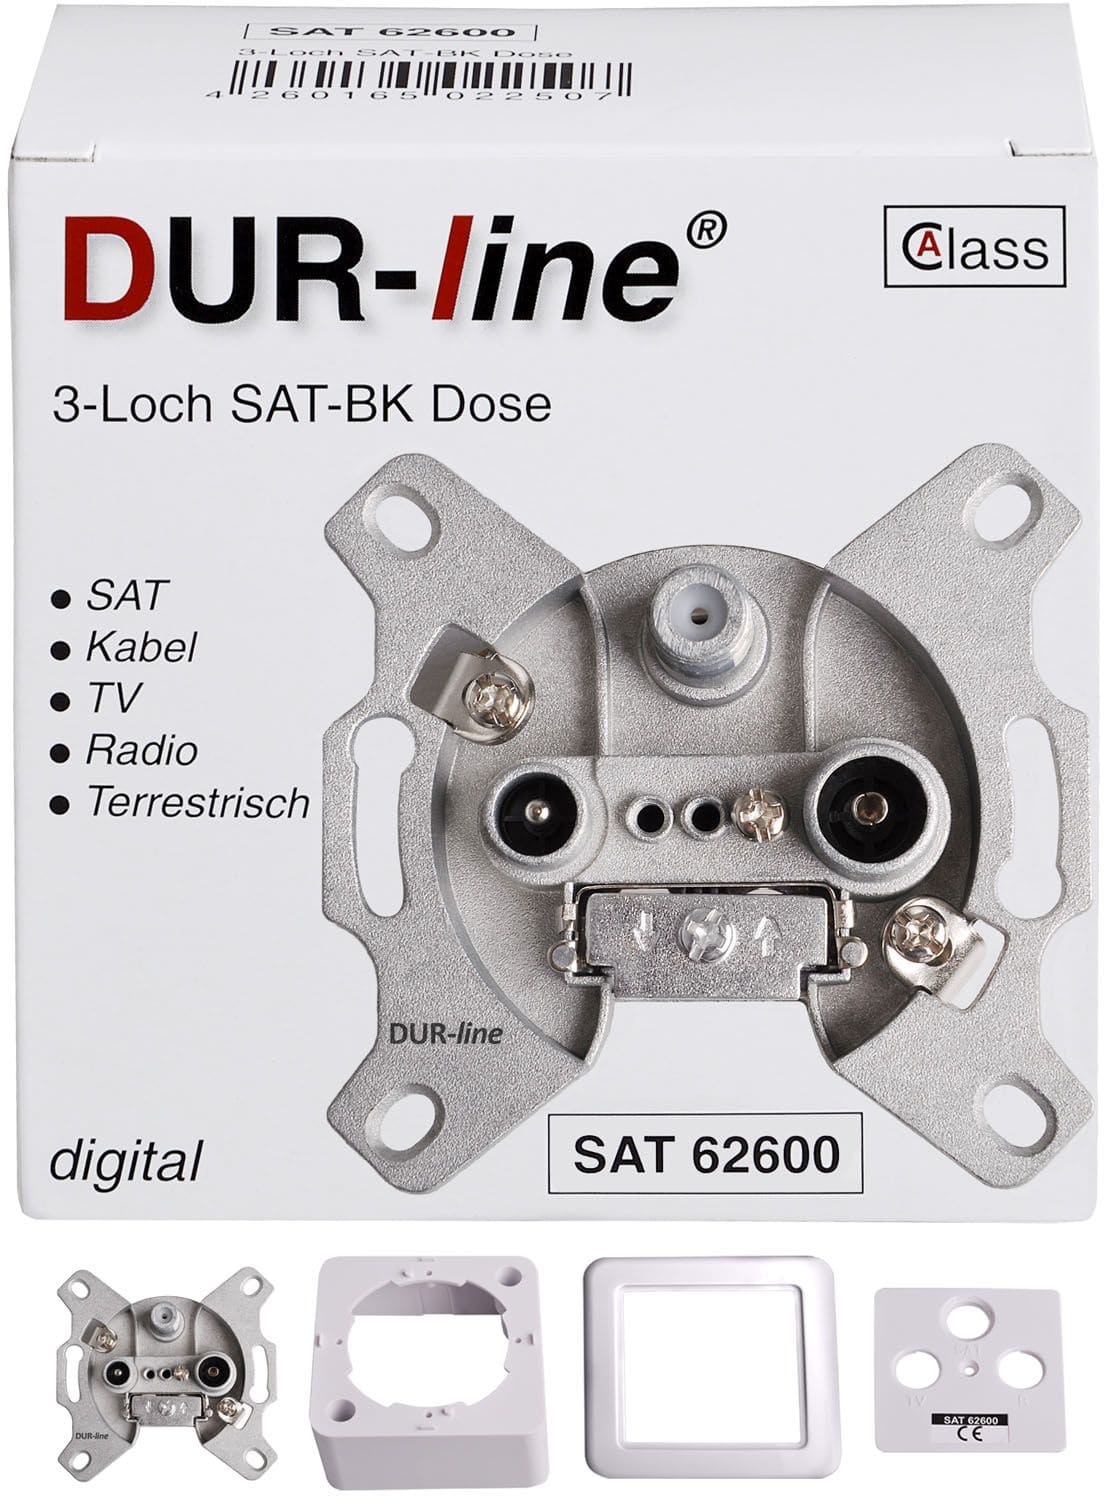 DuraSat Sat-Stichleitungsdose DUR-line DSA 62600 Stichleitungsdose komplett mit Rahmen, Deckel und Befestigungsschrauben für Sat, Kabel, Radio und Terrestrik